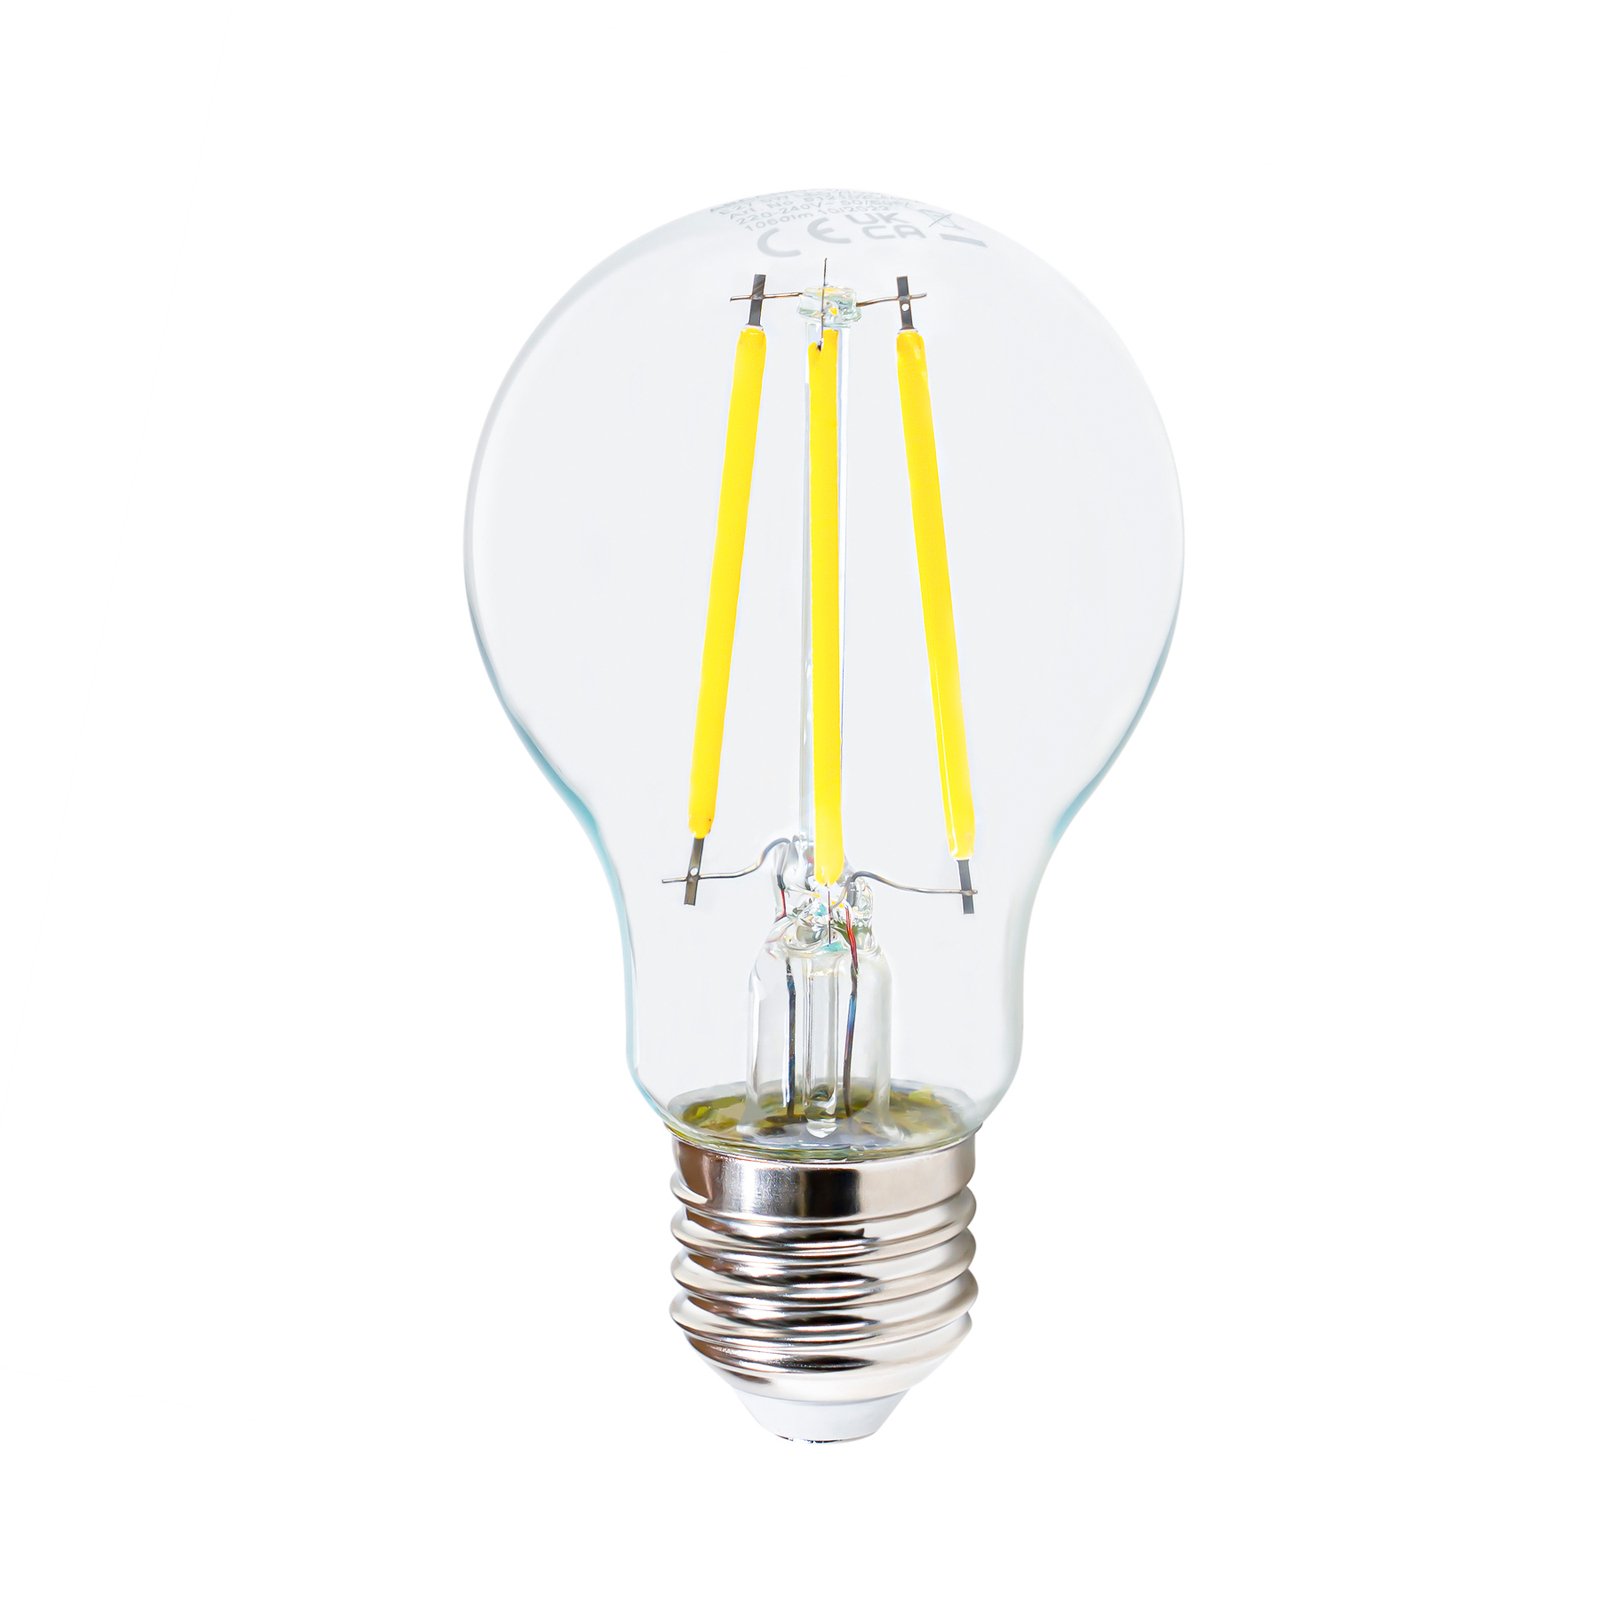 LED filament lamp E27 5W 2.700 K, 1060 lumen, helder